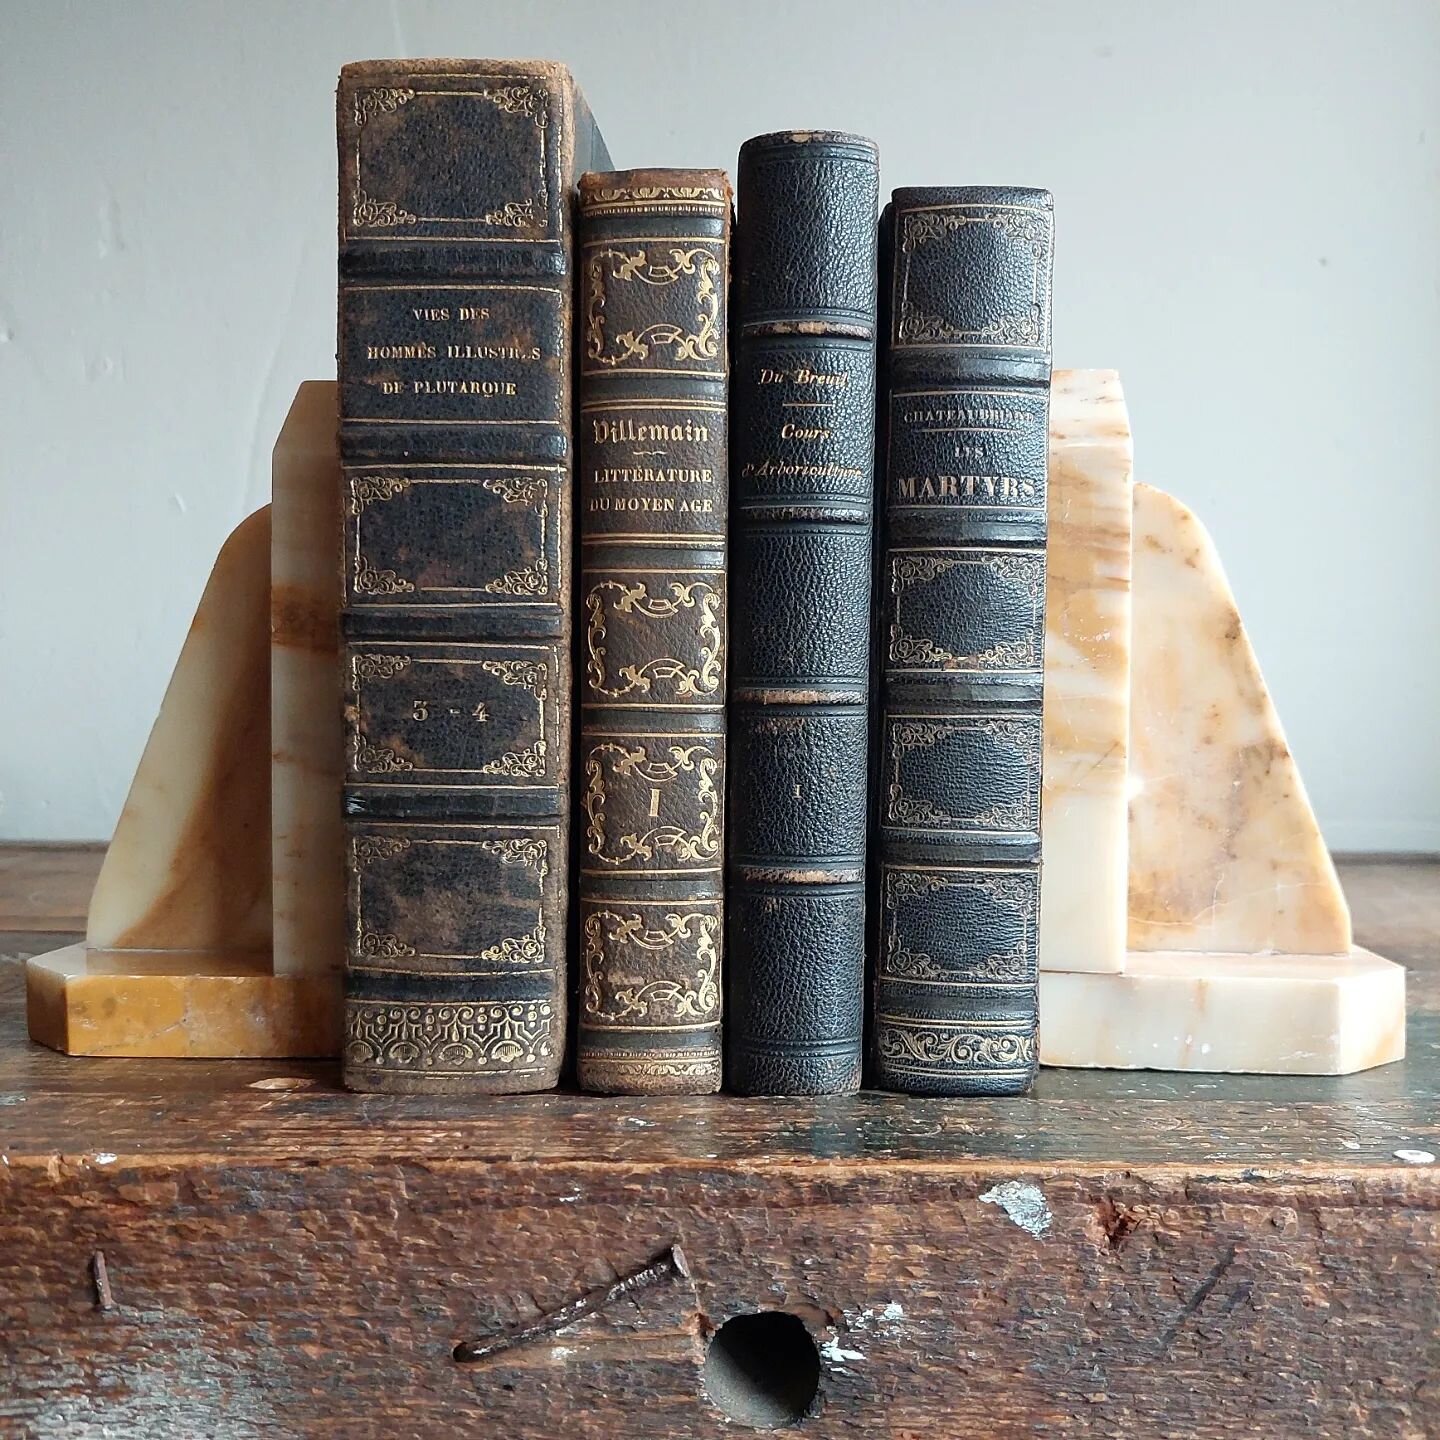 [ BOOKS ]

Ik vind boeken heerlijk om mee te stylen in huis. Als ophoging onder een mooi item, als toevoeging in een boekenkast, of met een stolp erop. Hier een rijtje prachtige oude boeken, allemaal van rond 1850. Kijk ook eens de laatste foto voor 